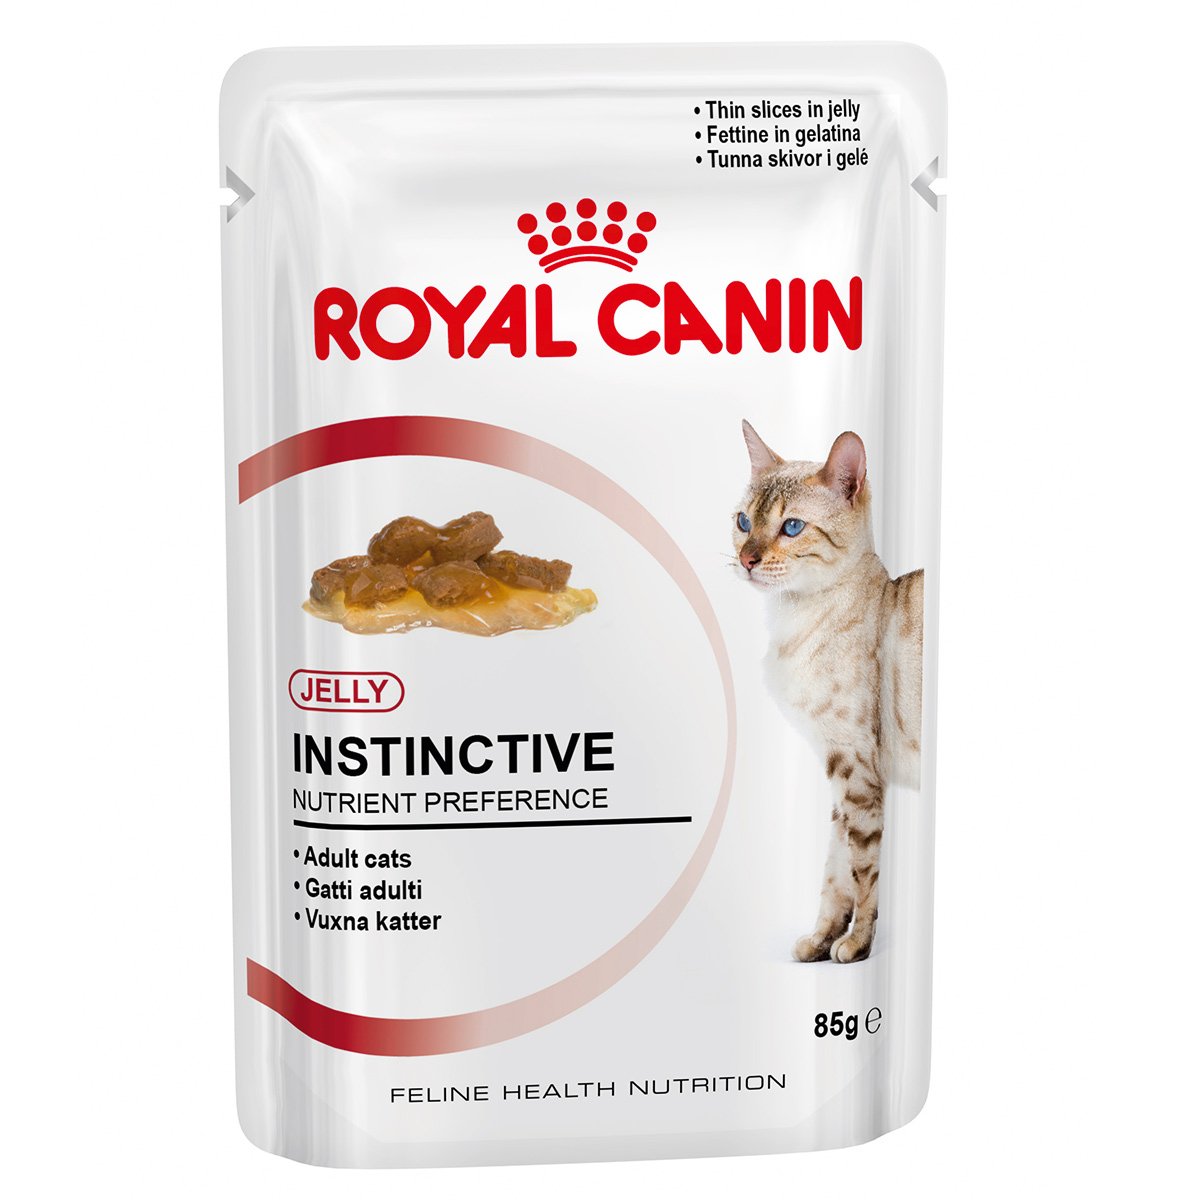 PROMO 3 + 1 Royal Canin Instinctive in Jelly, 4 plicuri x 85g